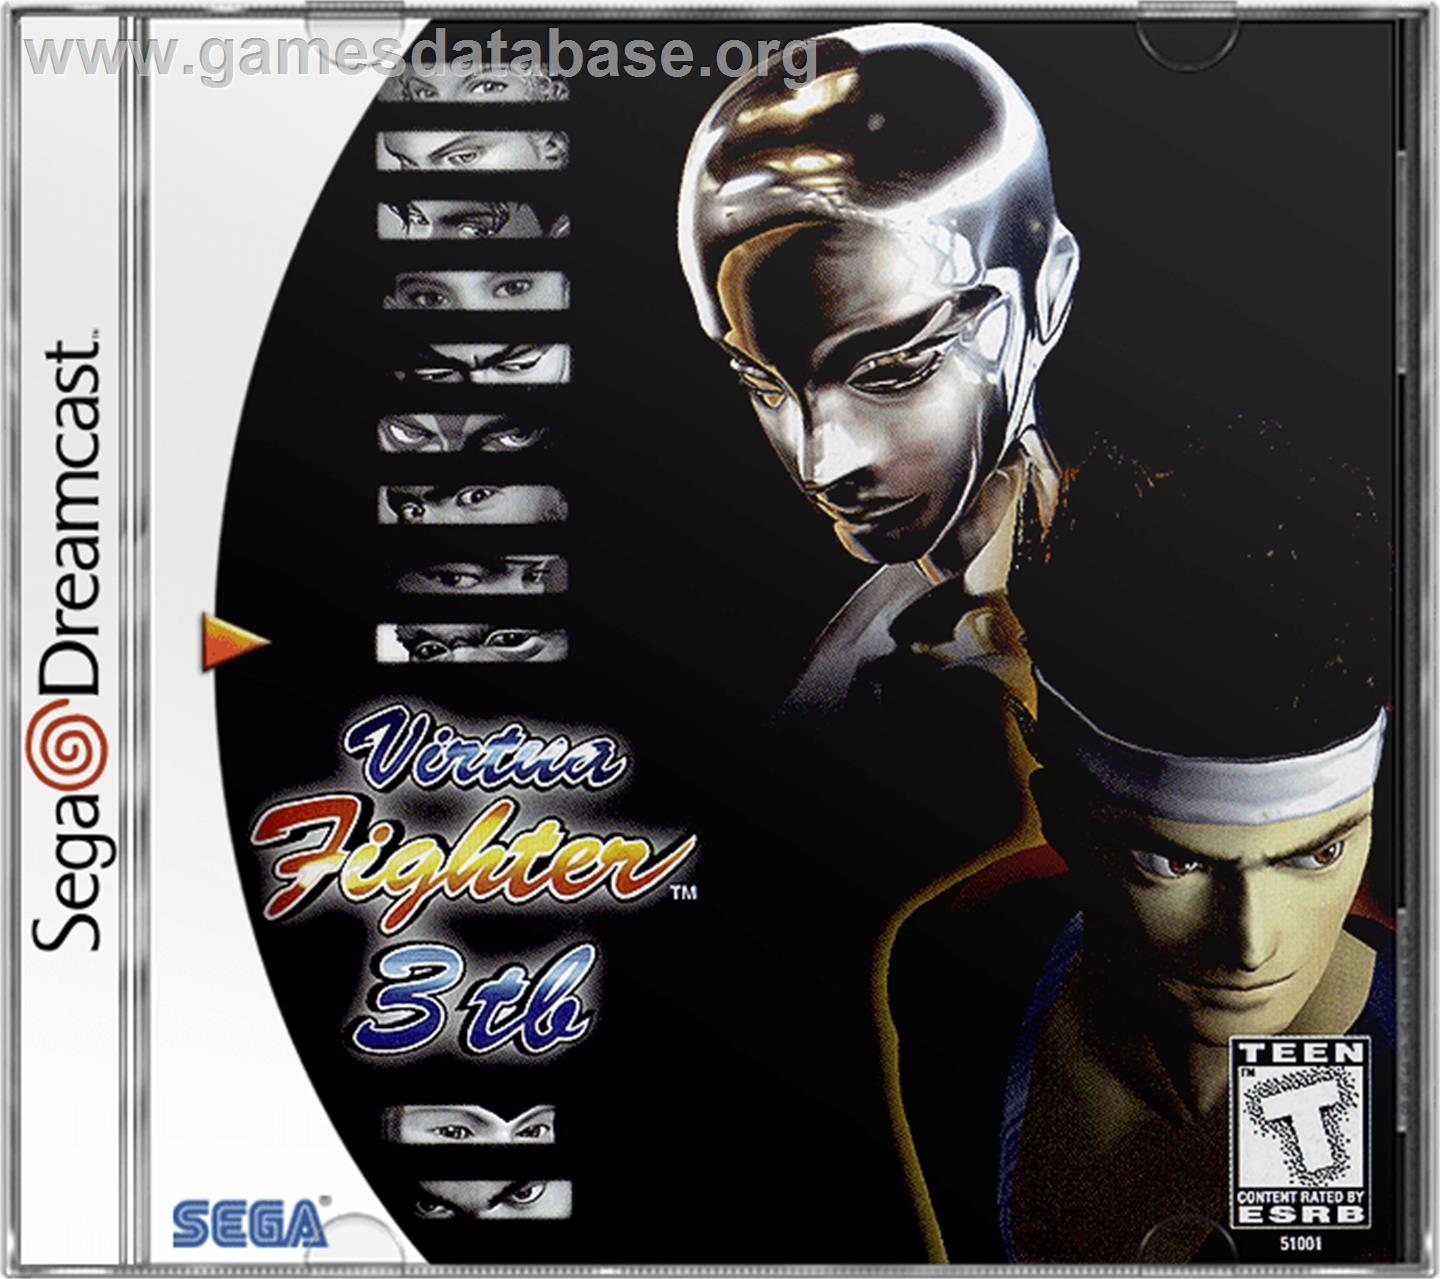 Virtua Fighter 3 - Sega Dreamcast - Artwork - Box